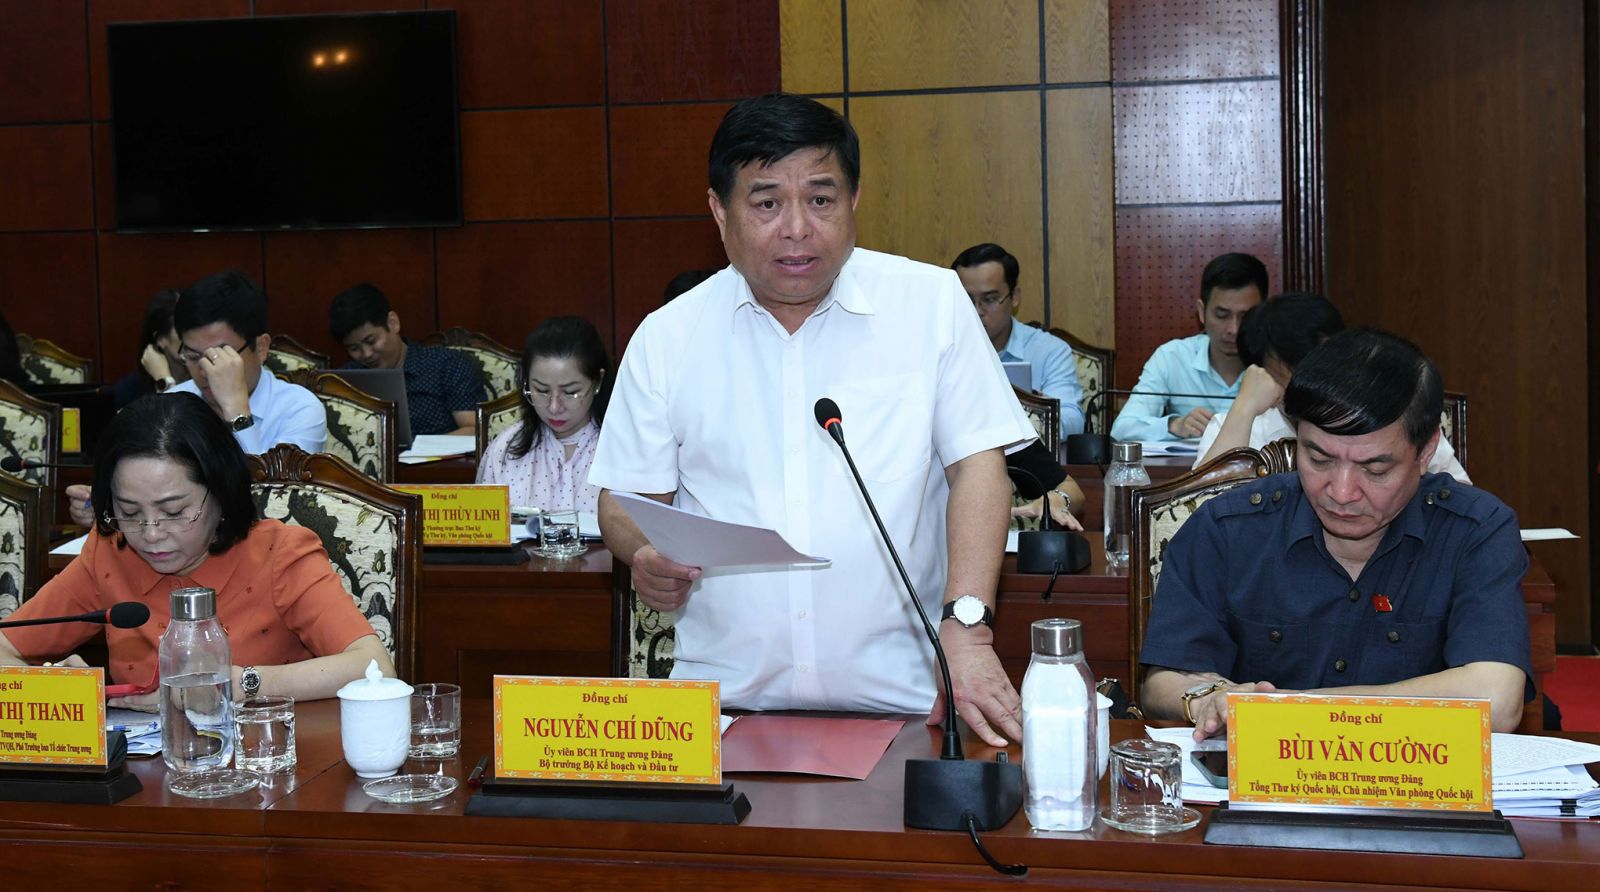 Bí thư Tỉnh uỷ Nguyễn Thành Tâm tiếp thu ý kiến của Chủ tịch Quốc hội Vương Đình Huệ.